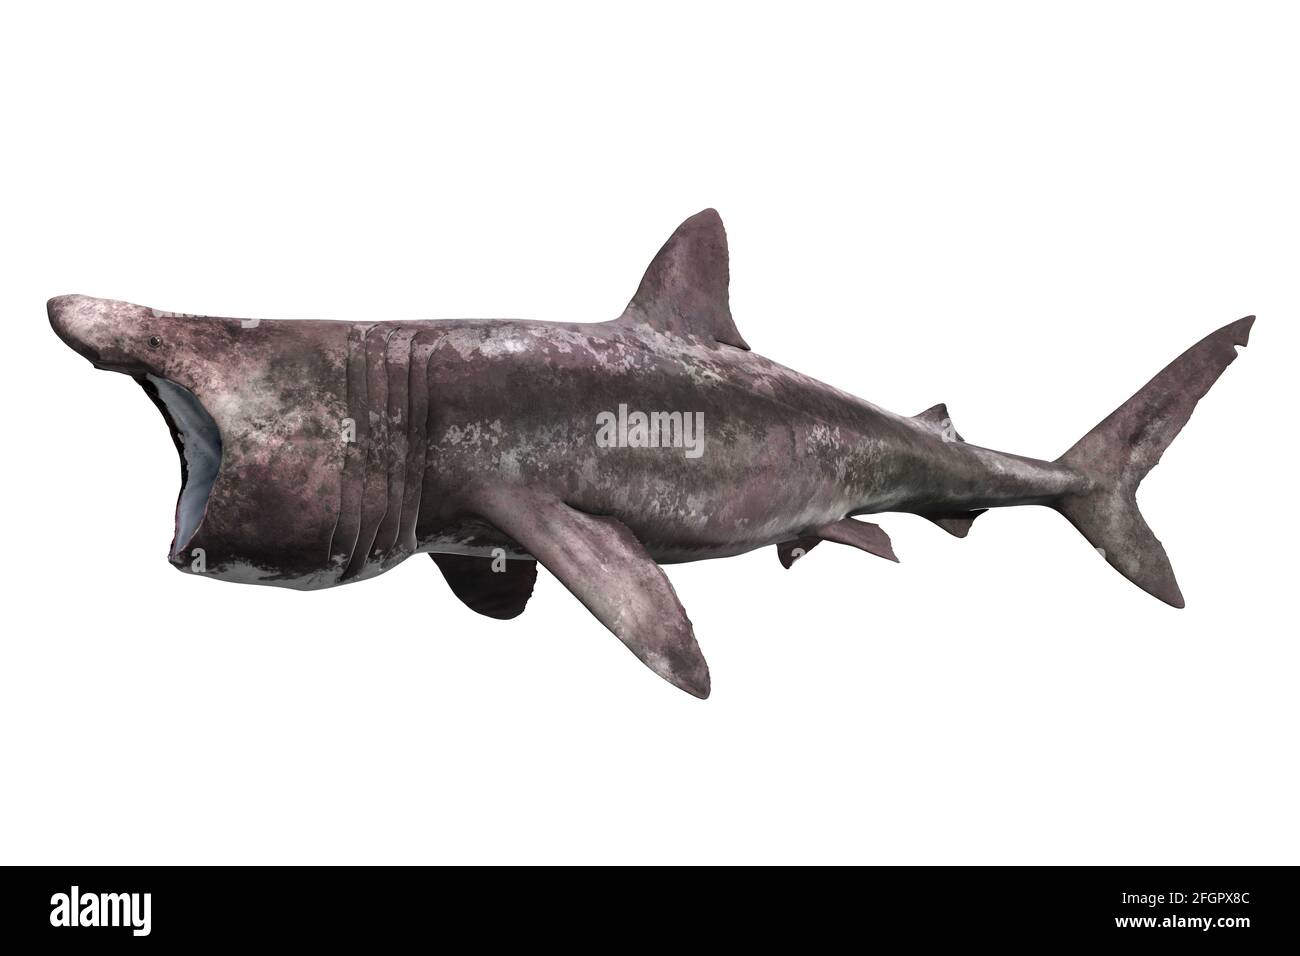 Basking shark, Cetorhinus maximus, on white background Stock Photo